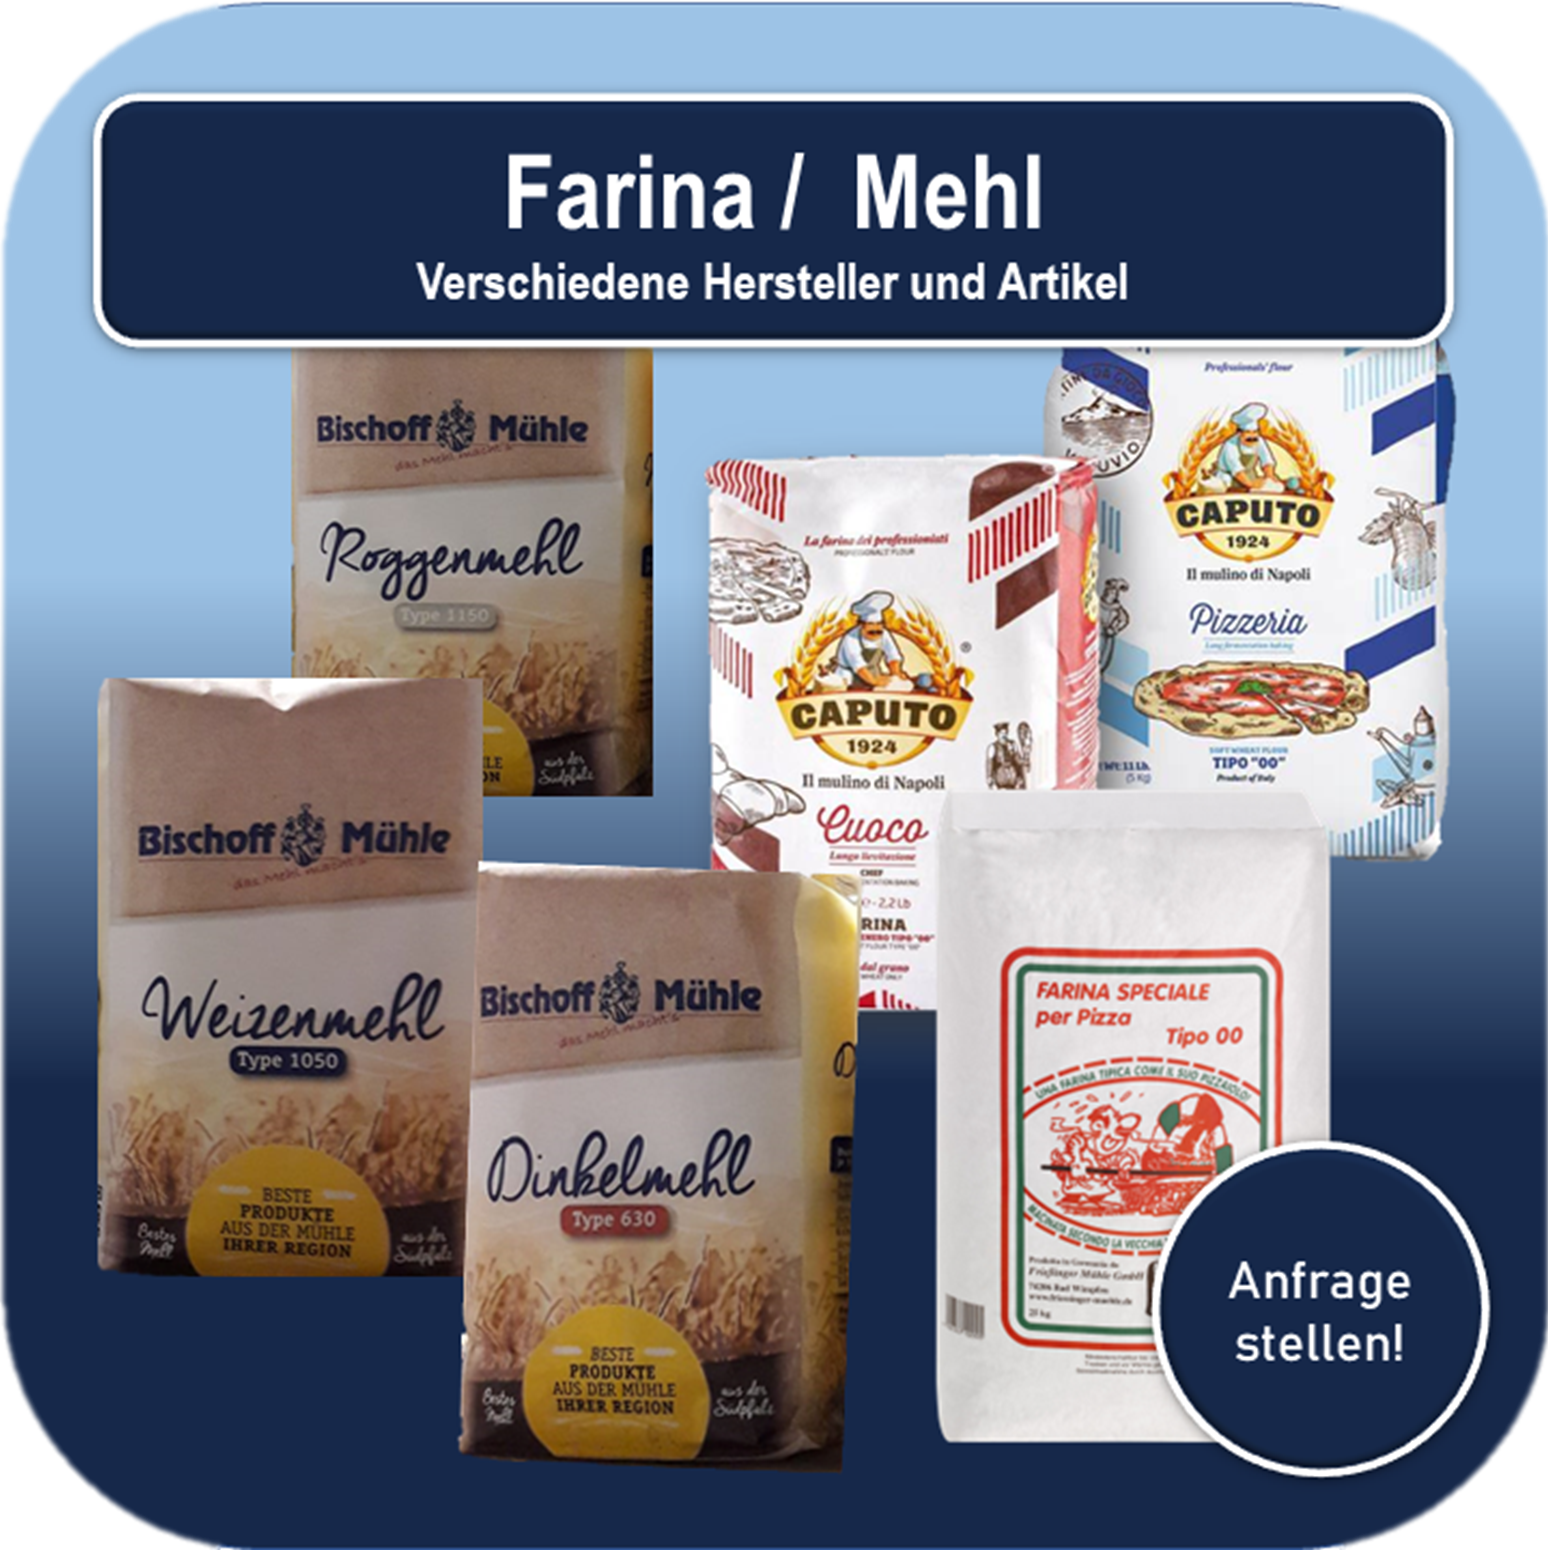 Farina / Mehl